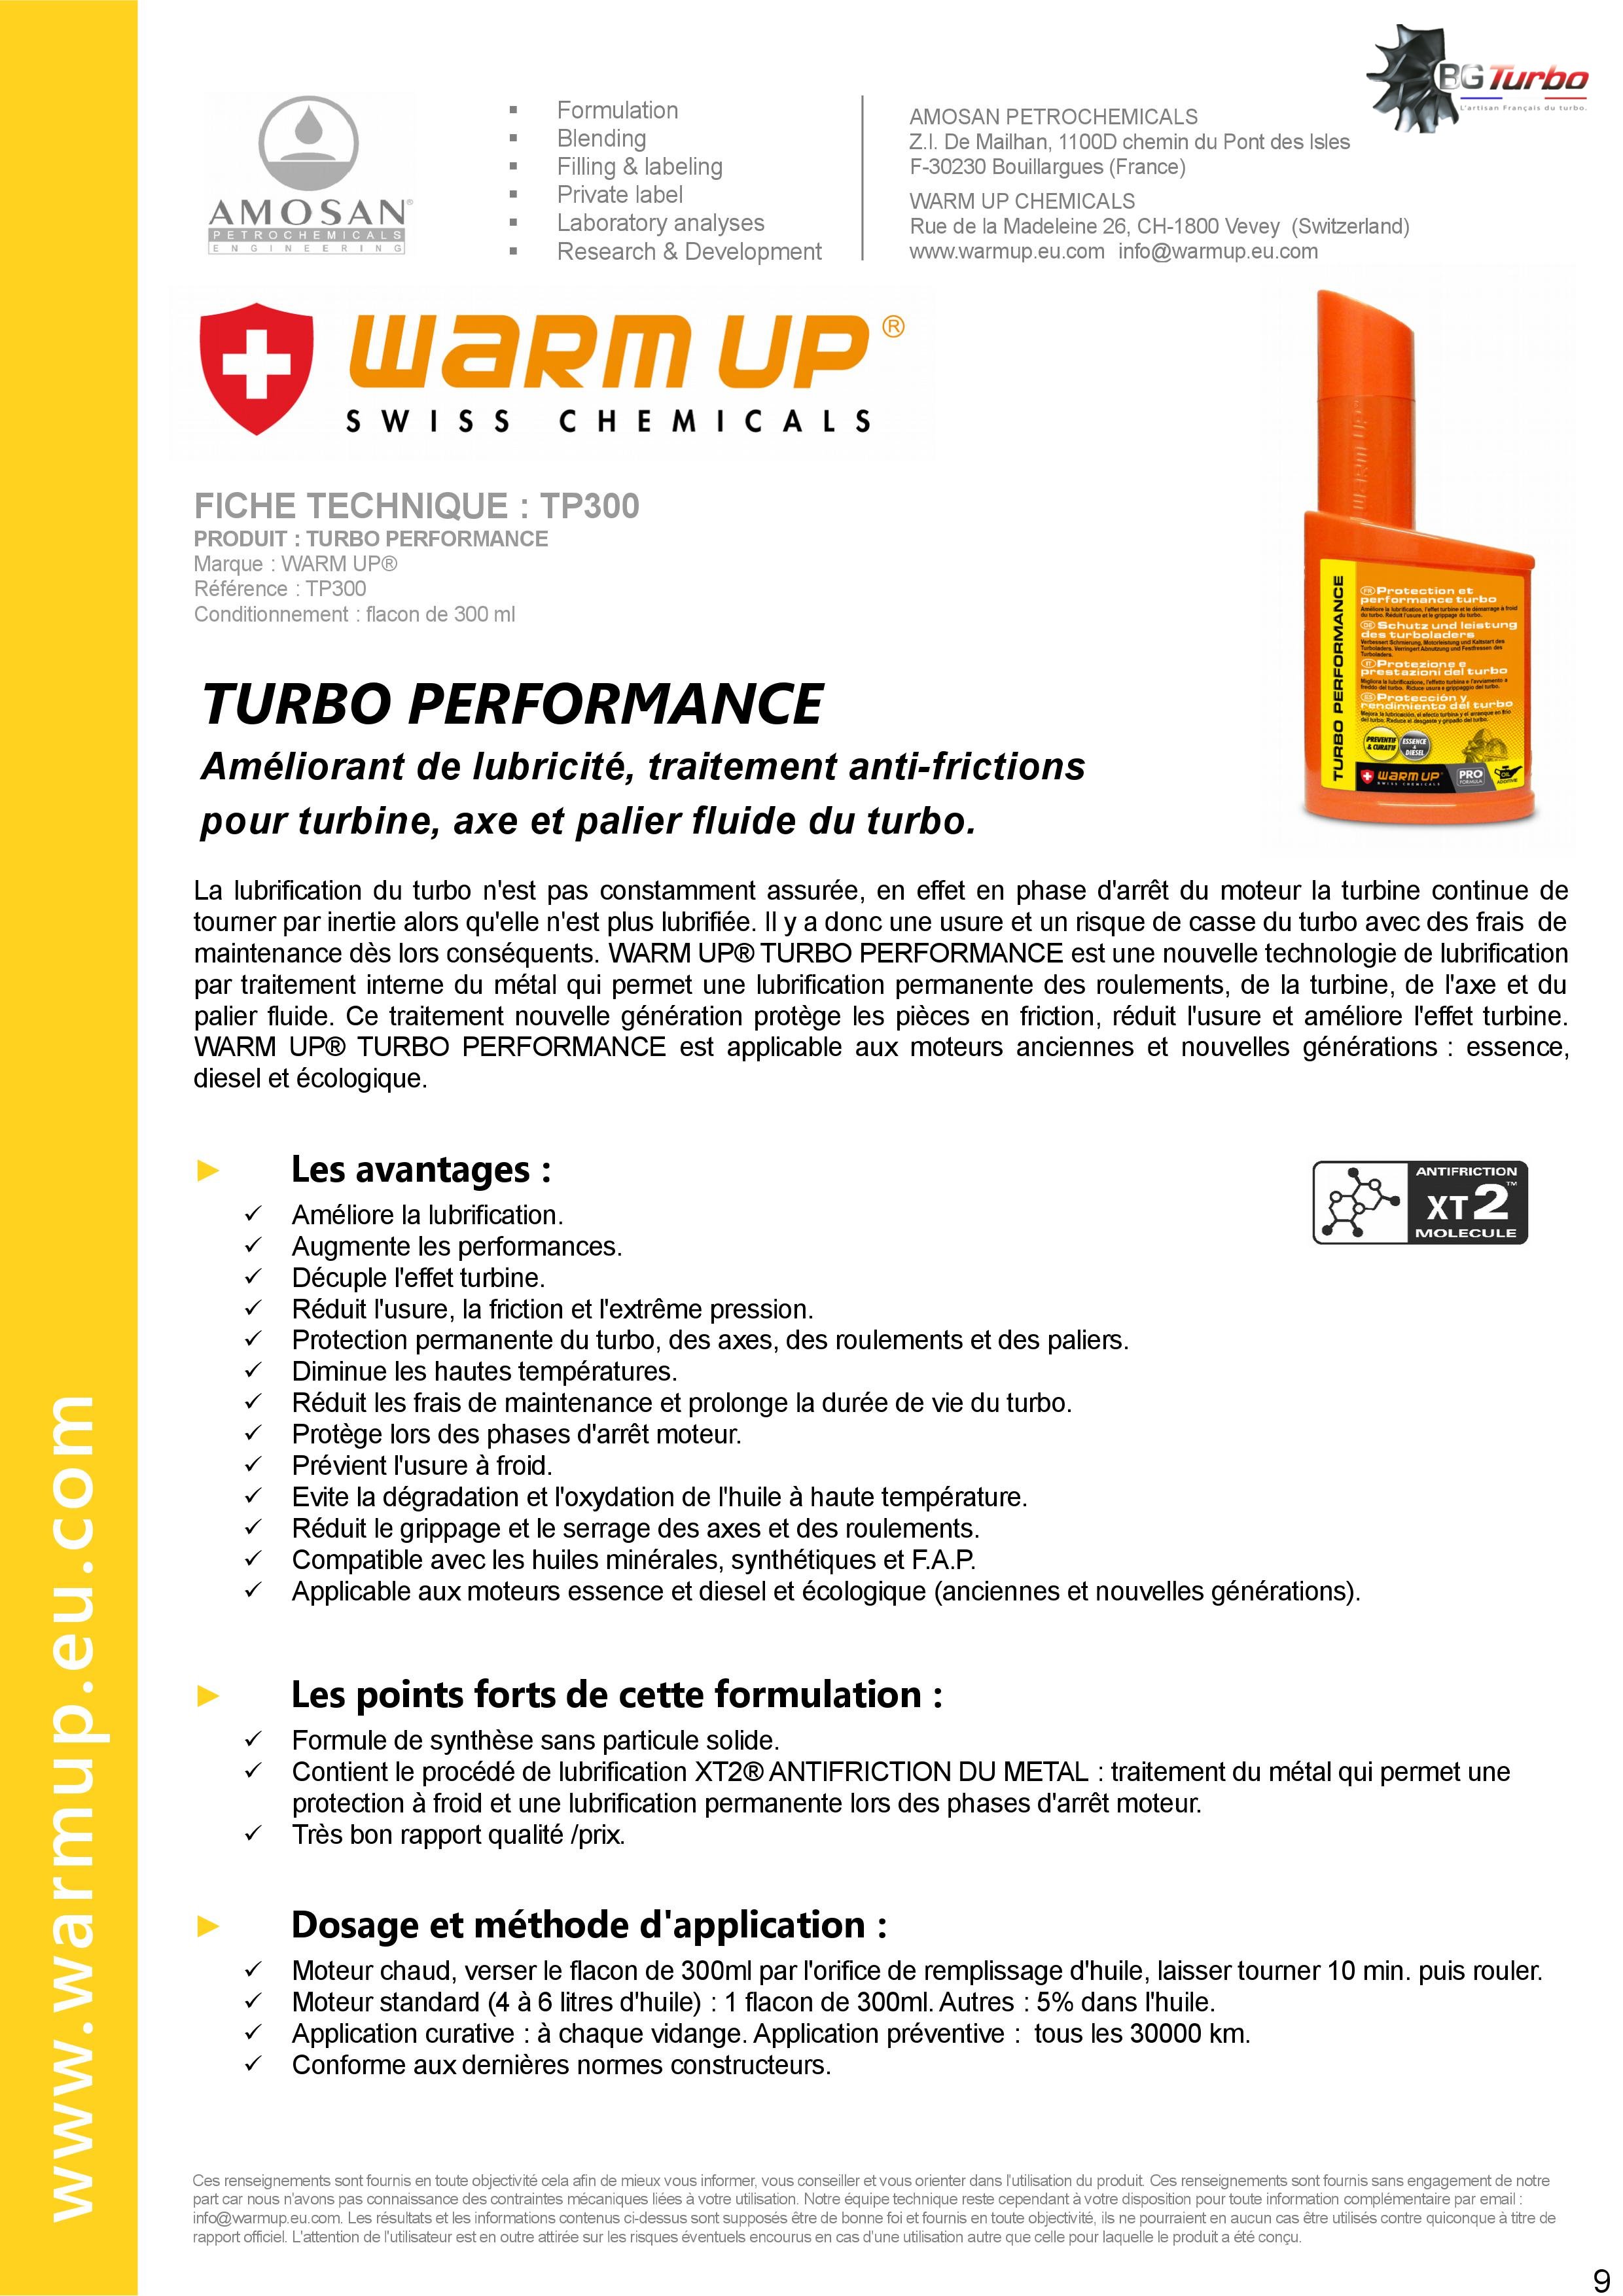 WARM UP Turbo Performance - Améliorant de lubricité et traitement  antifriction pour axe et palier fluide du turbo